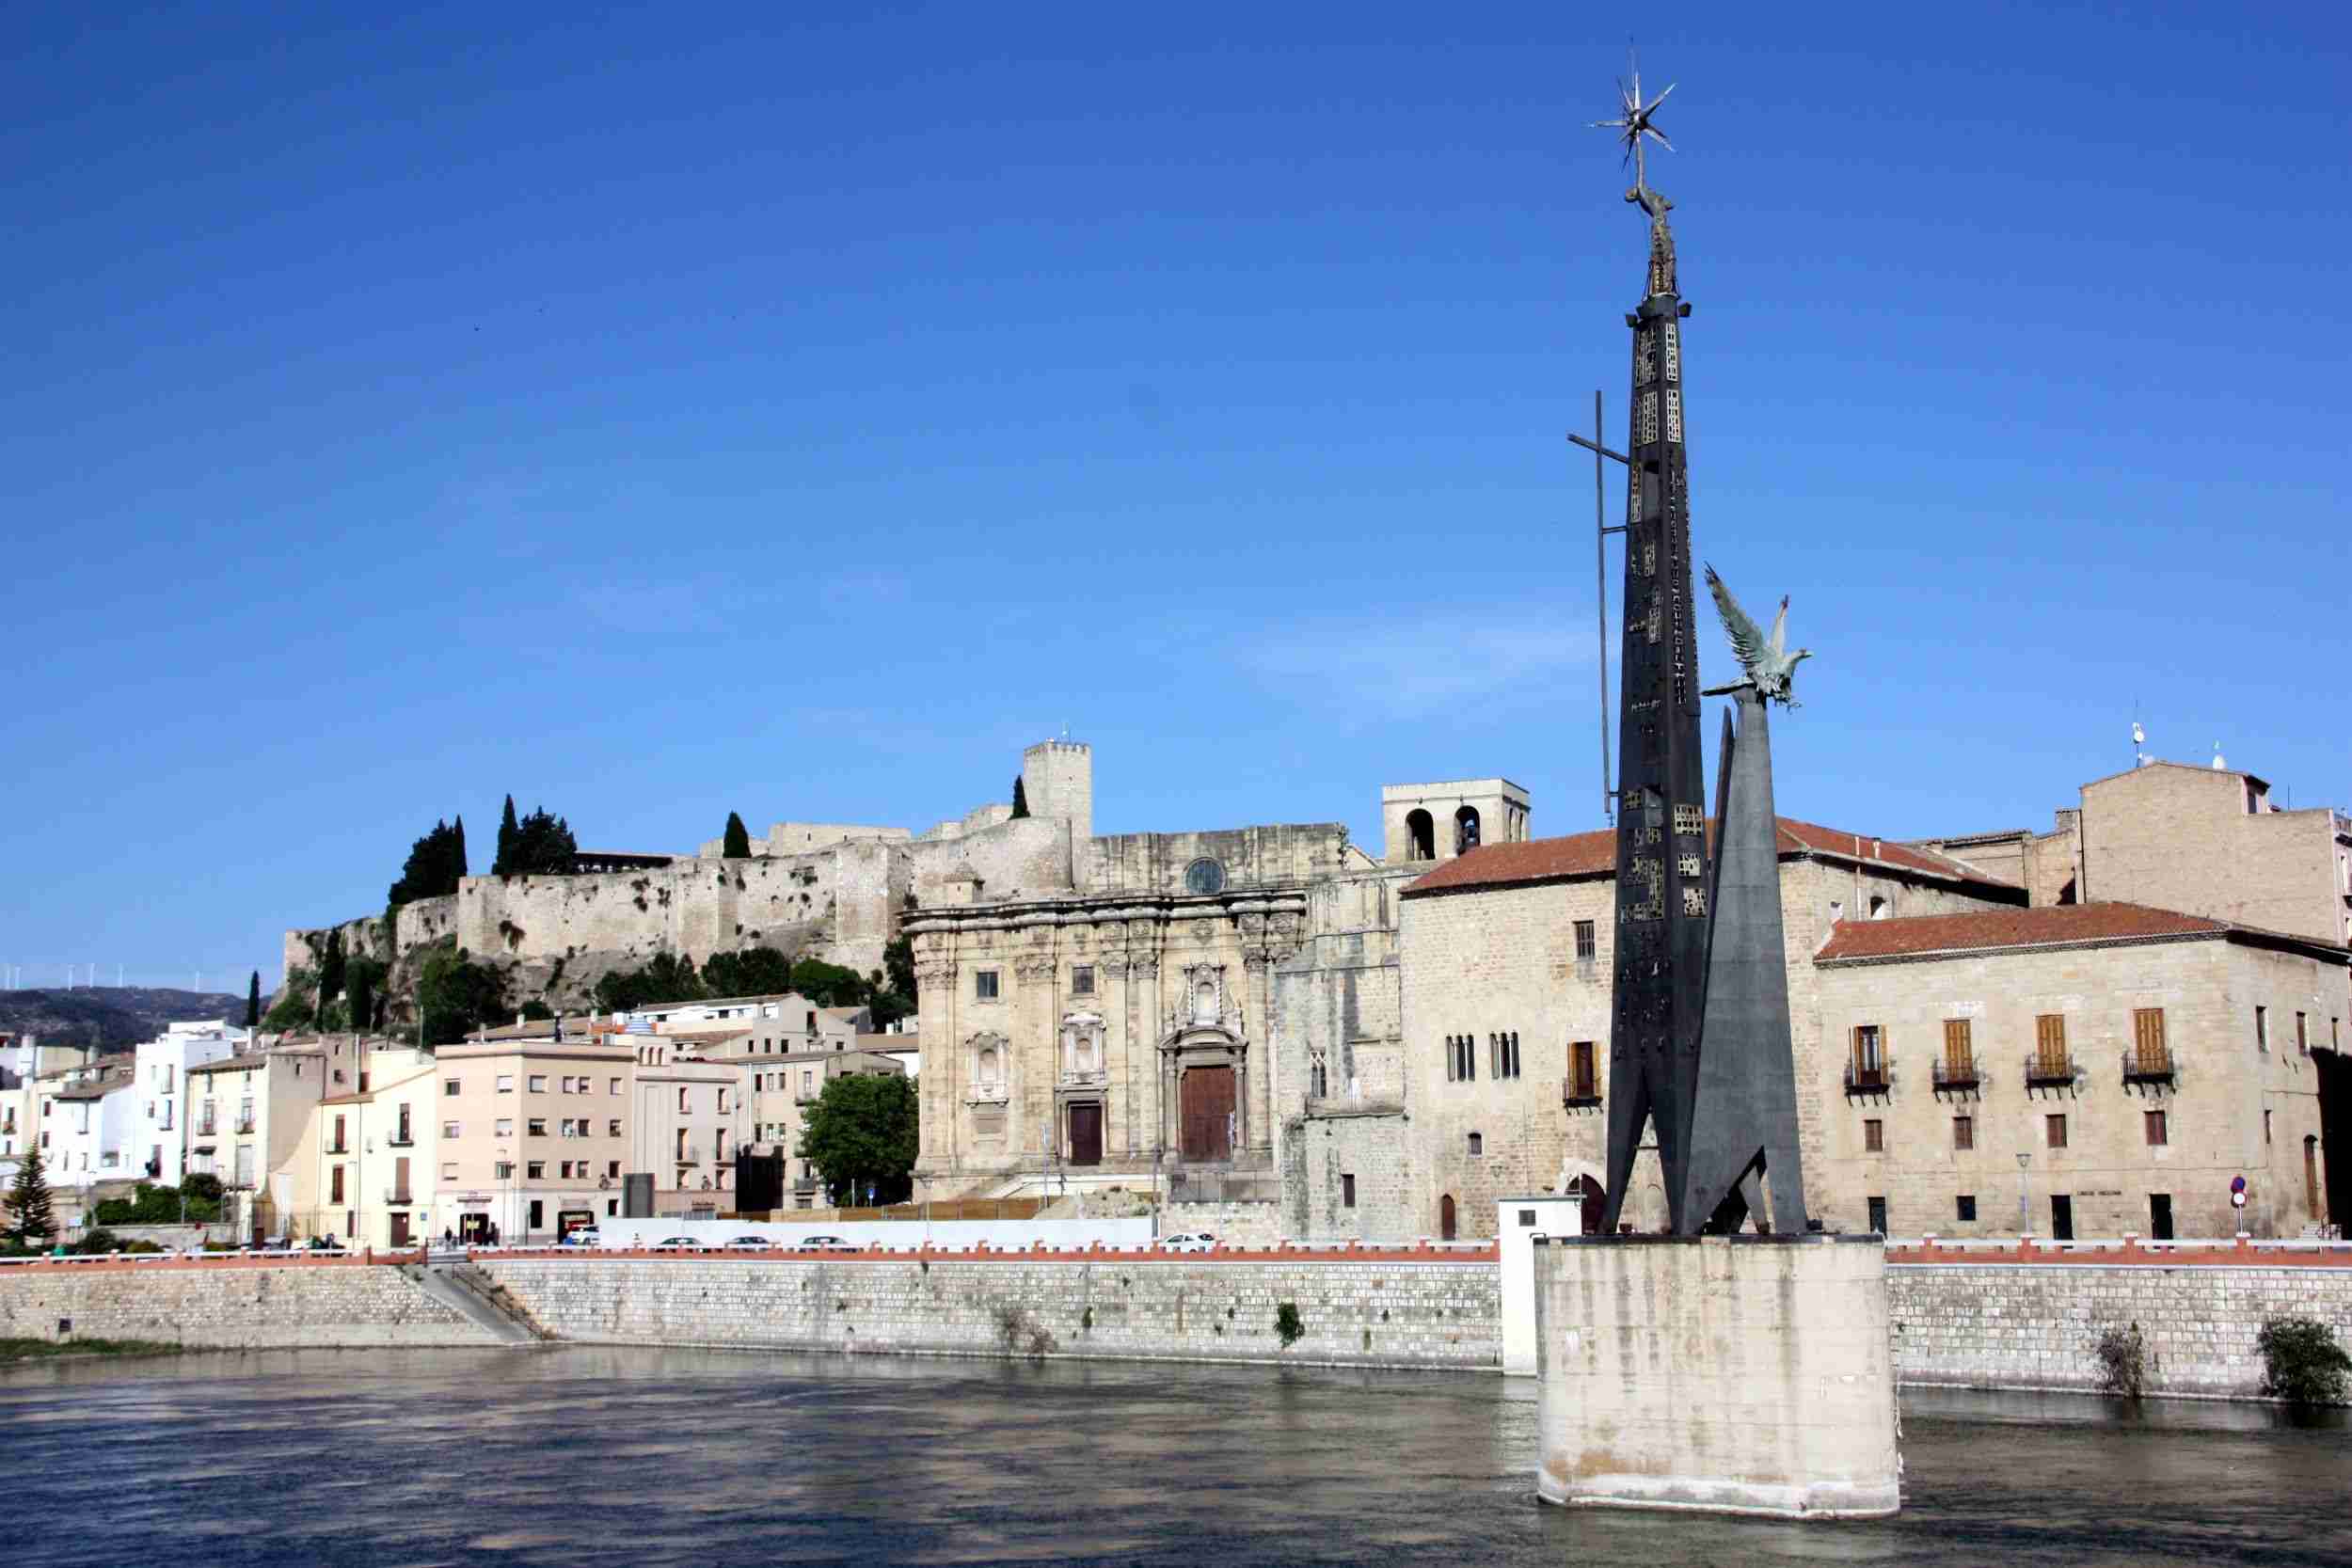 El Govern tiene previsto retirar en verano el monumento franquista de Tortosa